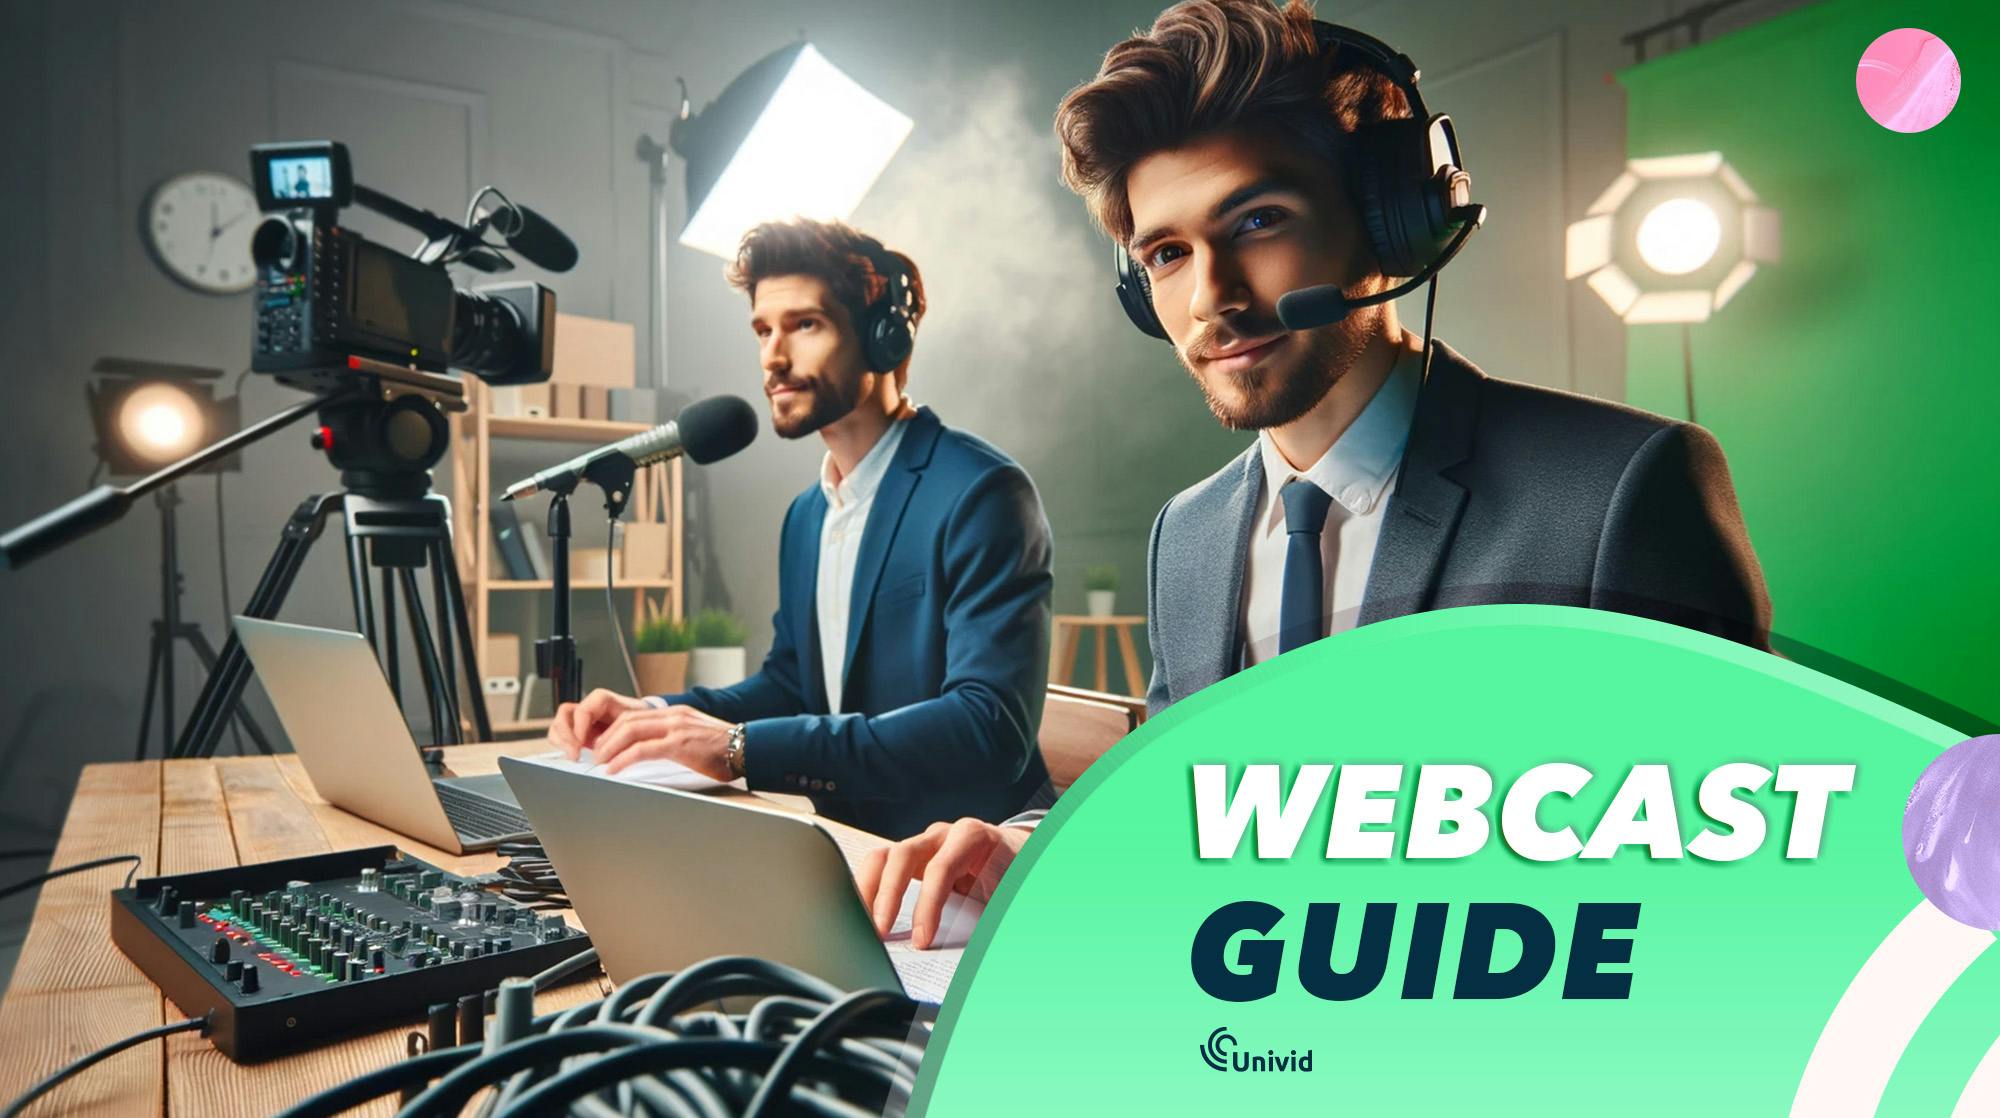 Webcast guide - Din guide till grymma webbsändningar